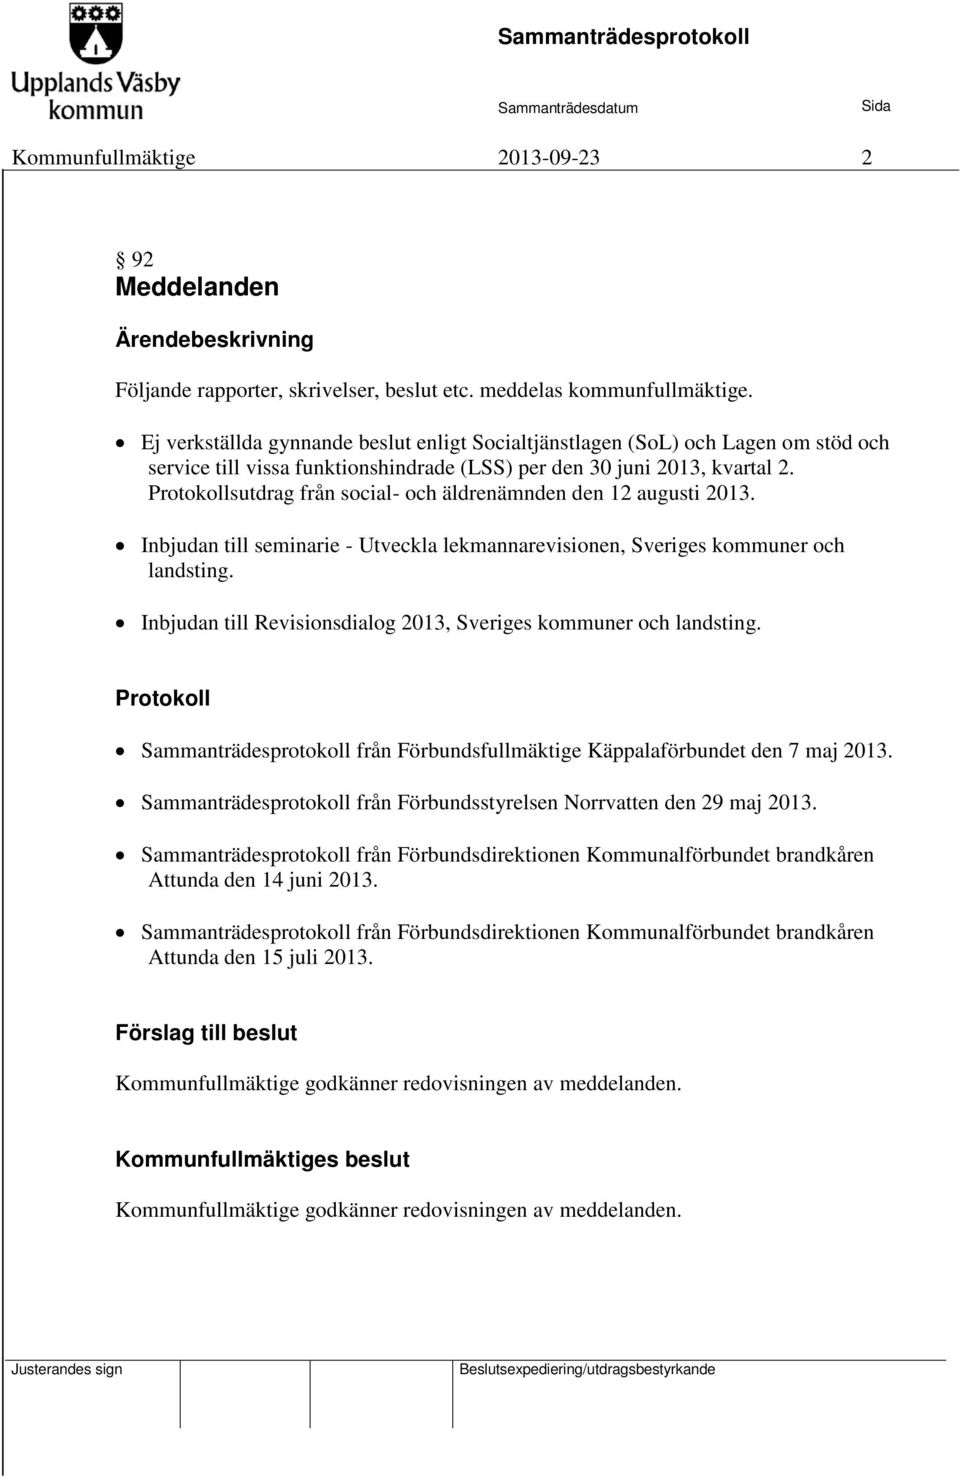 Protokollsutdrag från social- och äldrenämnden den 12 augusti 2013. Inbjudan till seminarie - Utveckla lekmannarevisionen, Sveriges kommuner och landsting.